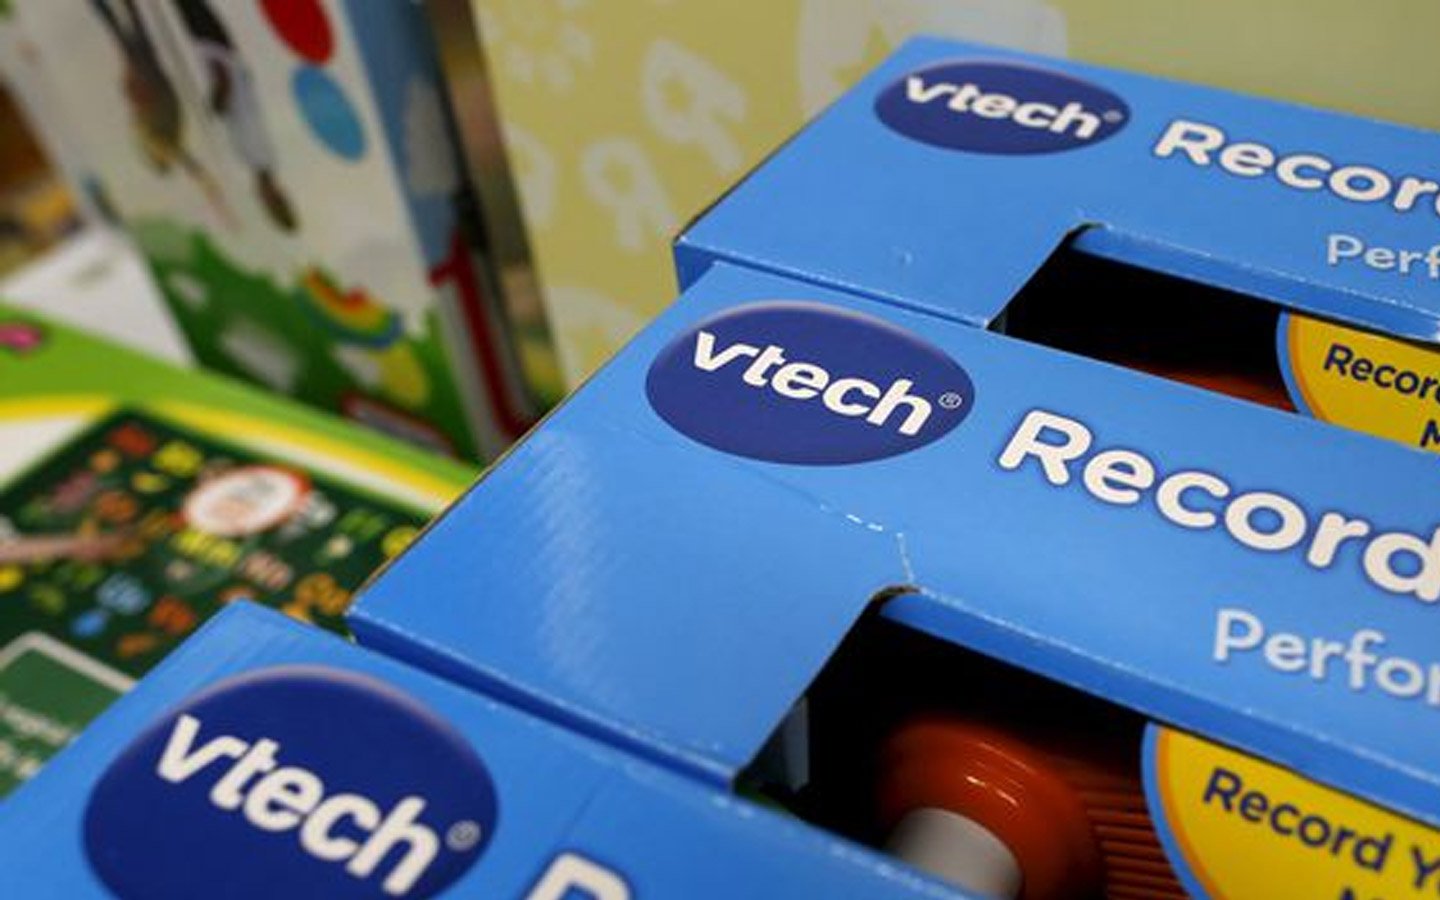 VTech : énorme scandale après le piratage de 5 millions de comptes